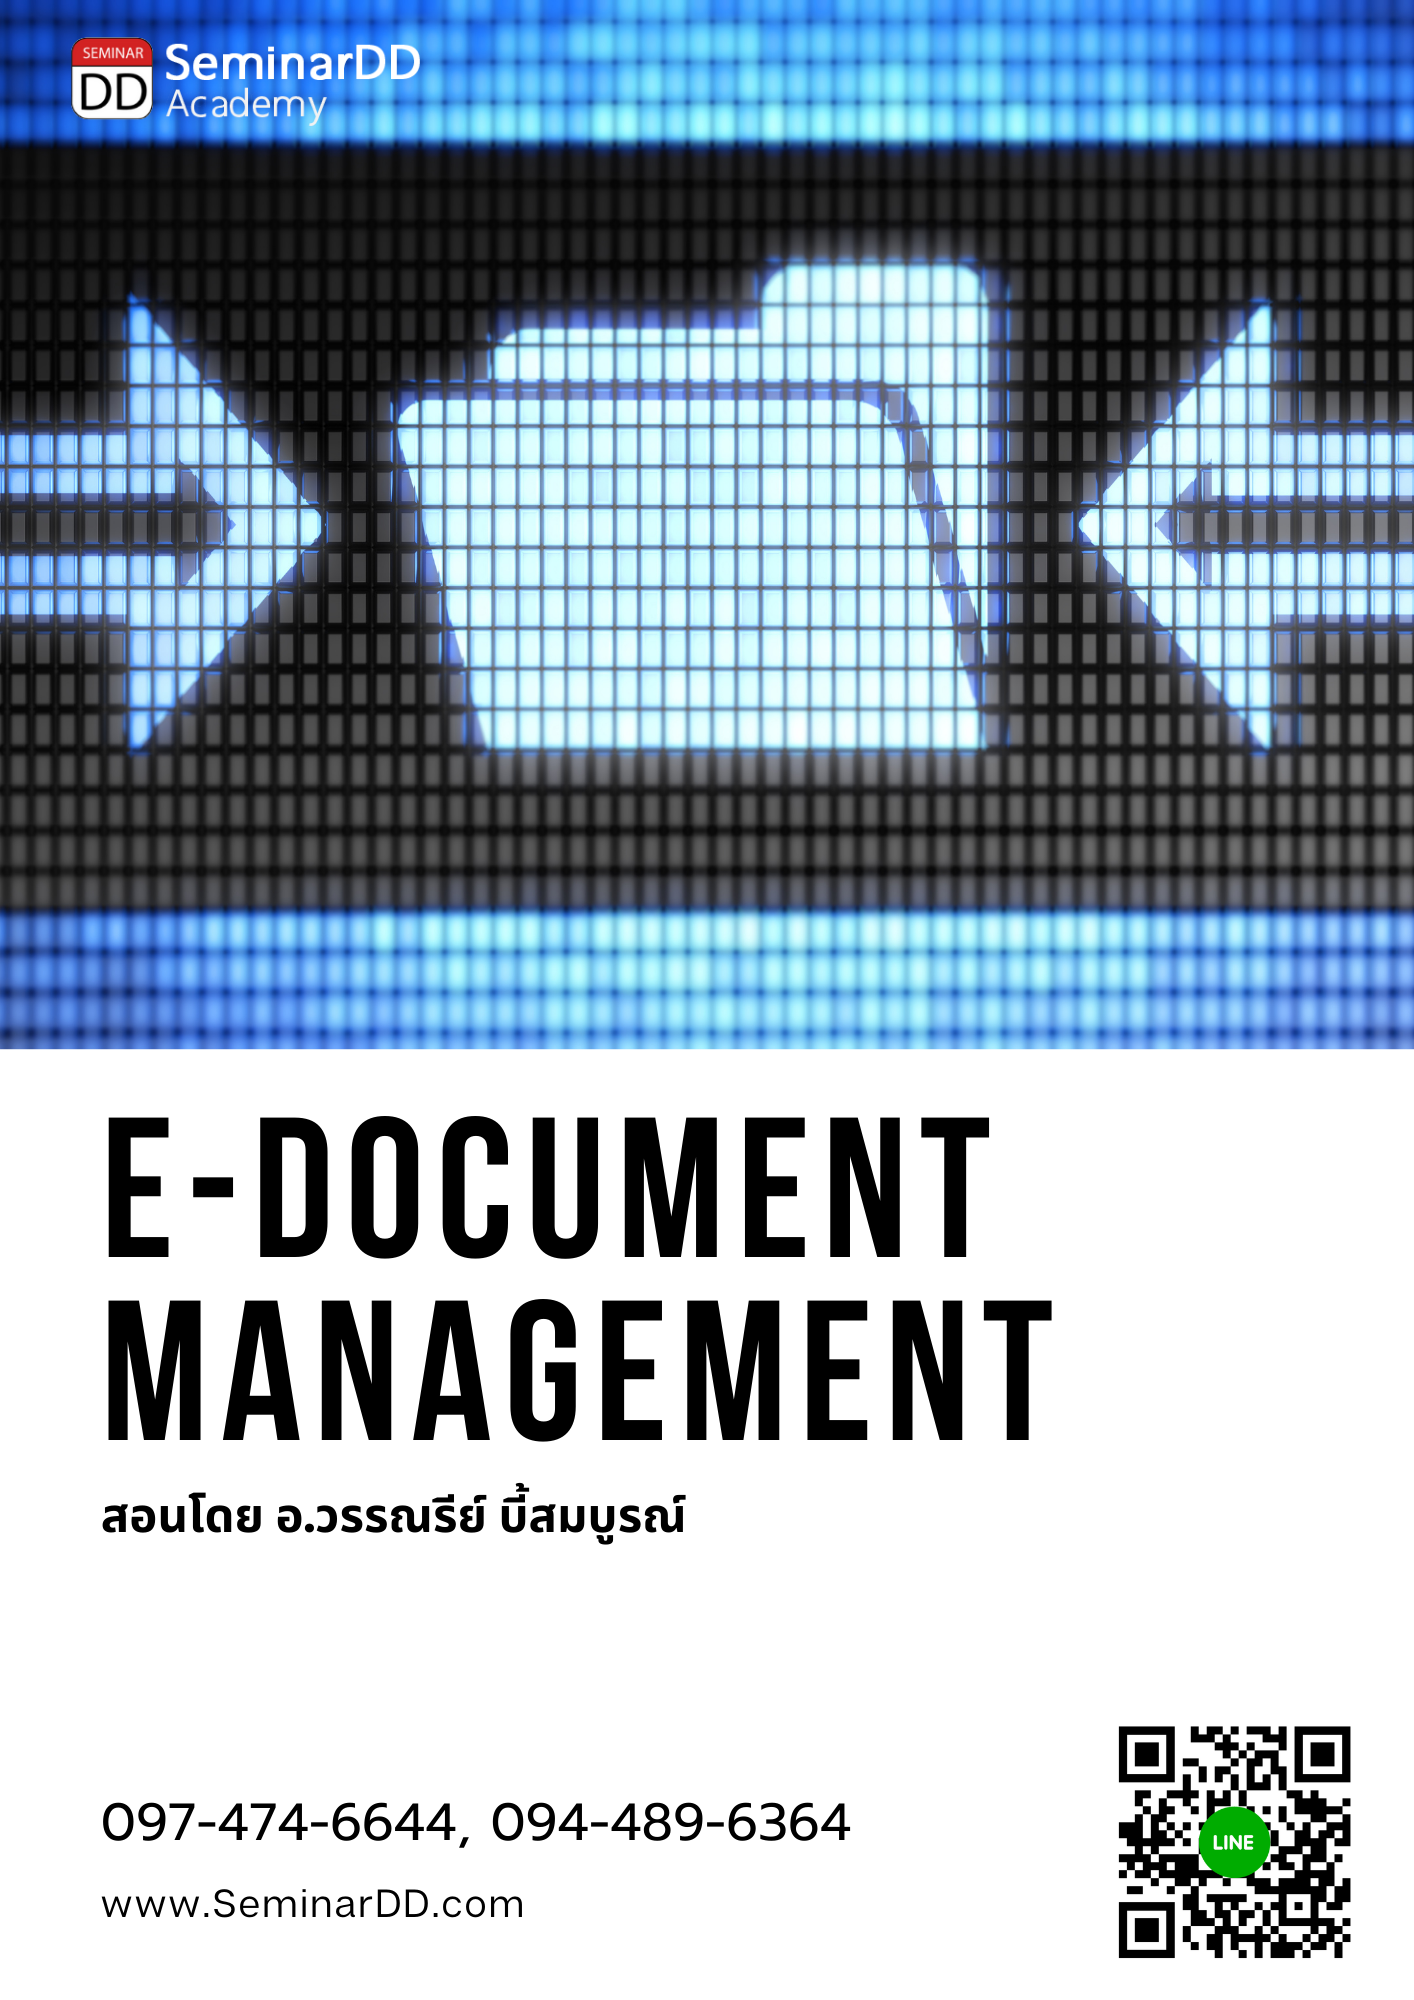 Online by Zoom หลักสูตร การบริหารและจัดเก็บเอกสาร ในรูปแบบดิจิทัล ตามมาตรฐานสากล (E-Document Management for ISO Standard)